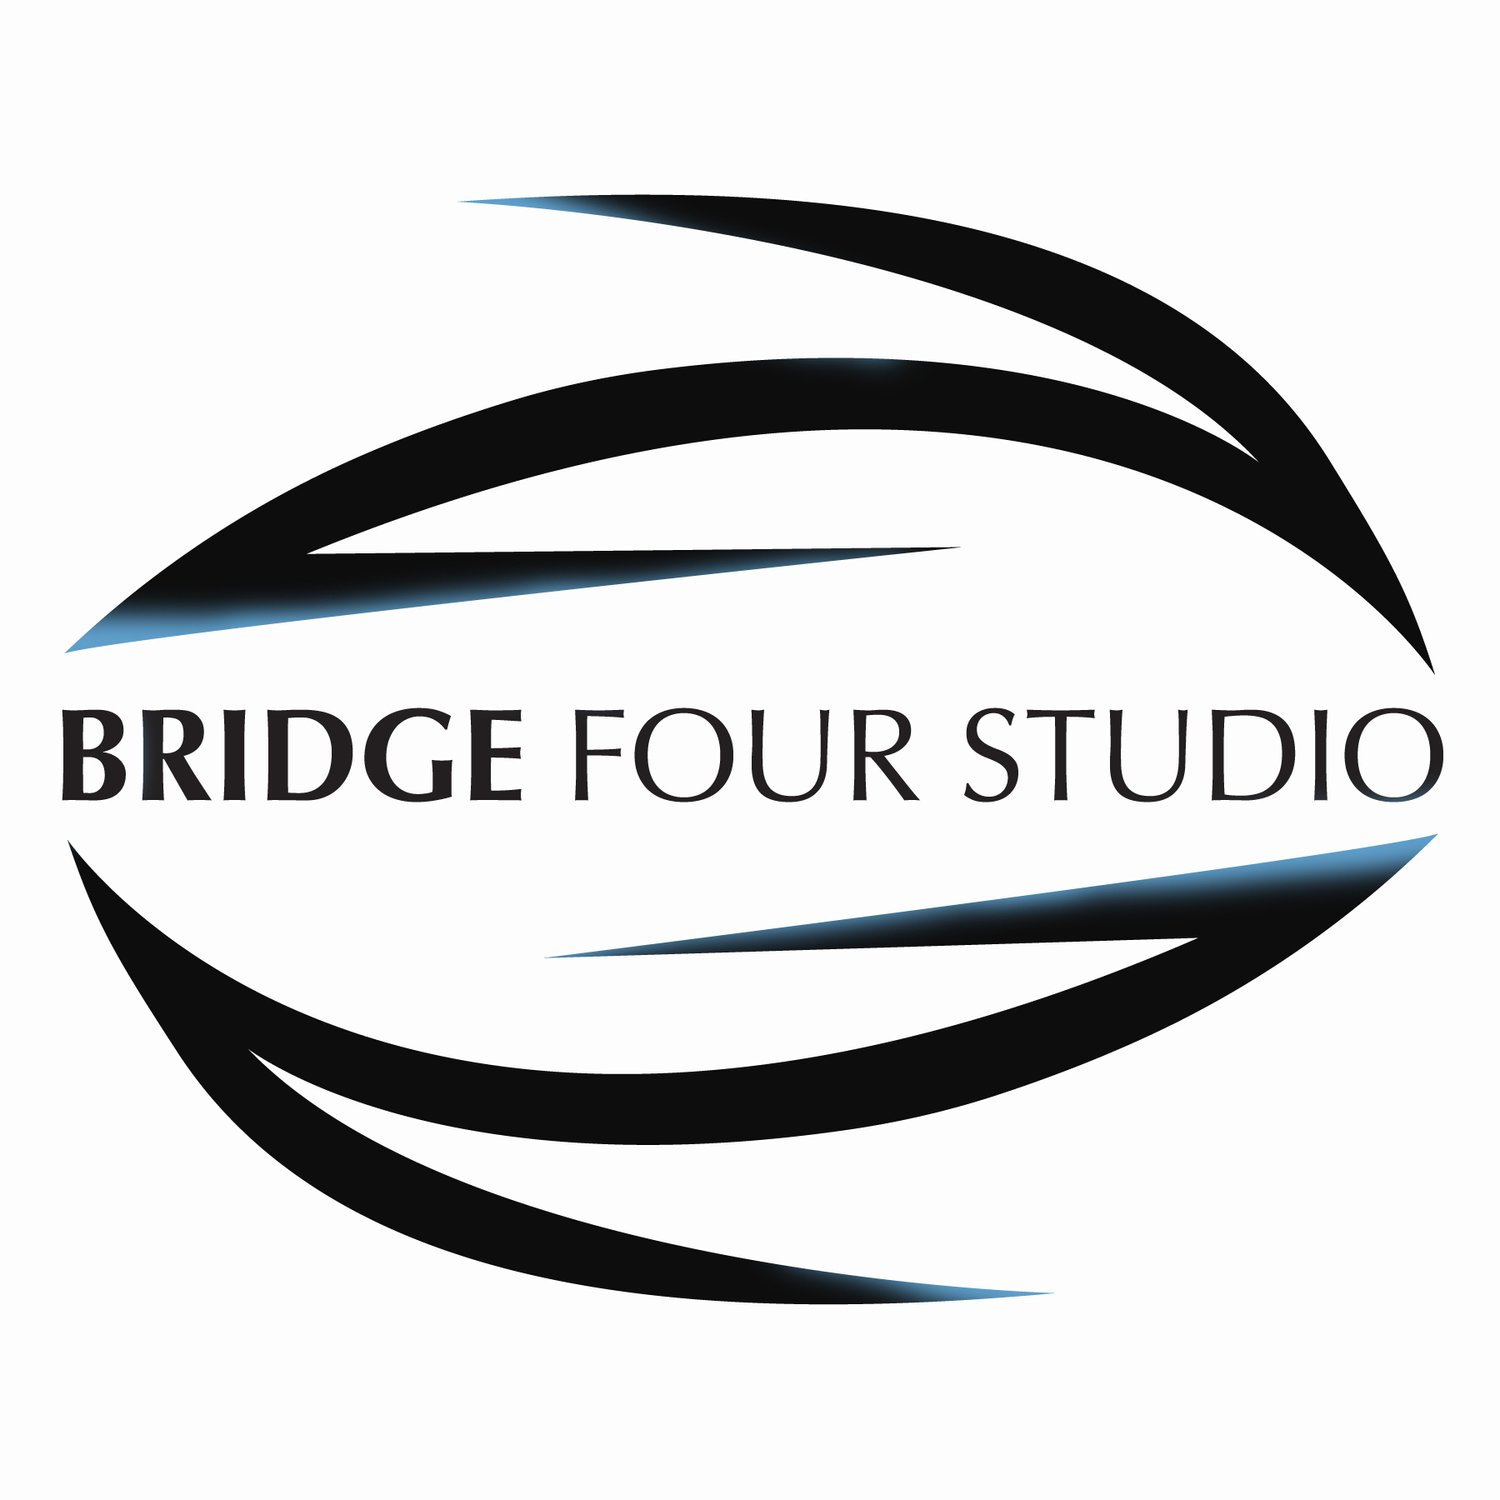 Bridge Four Studio